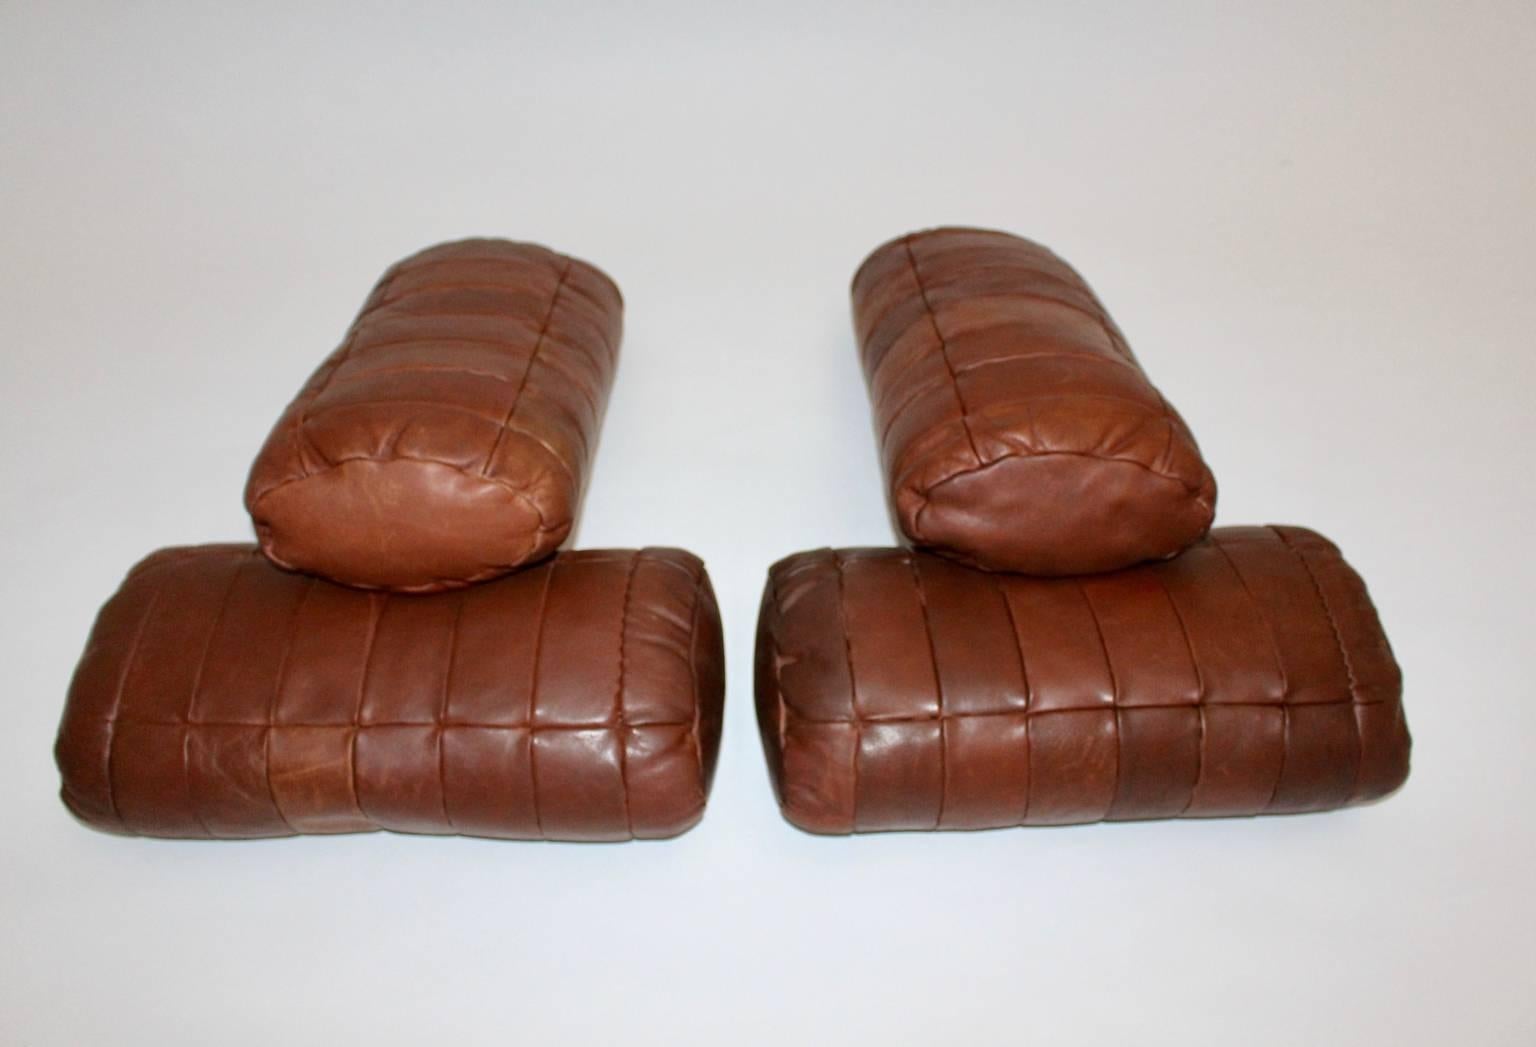  De Sede Cognac Leather Pillows, 1970s, Switzerland Set of Four 1